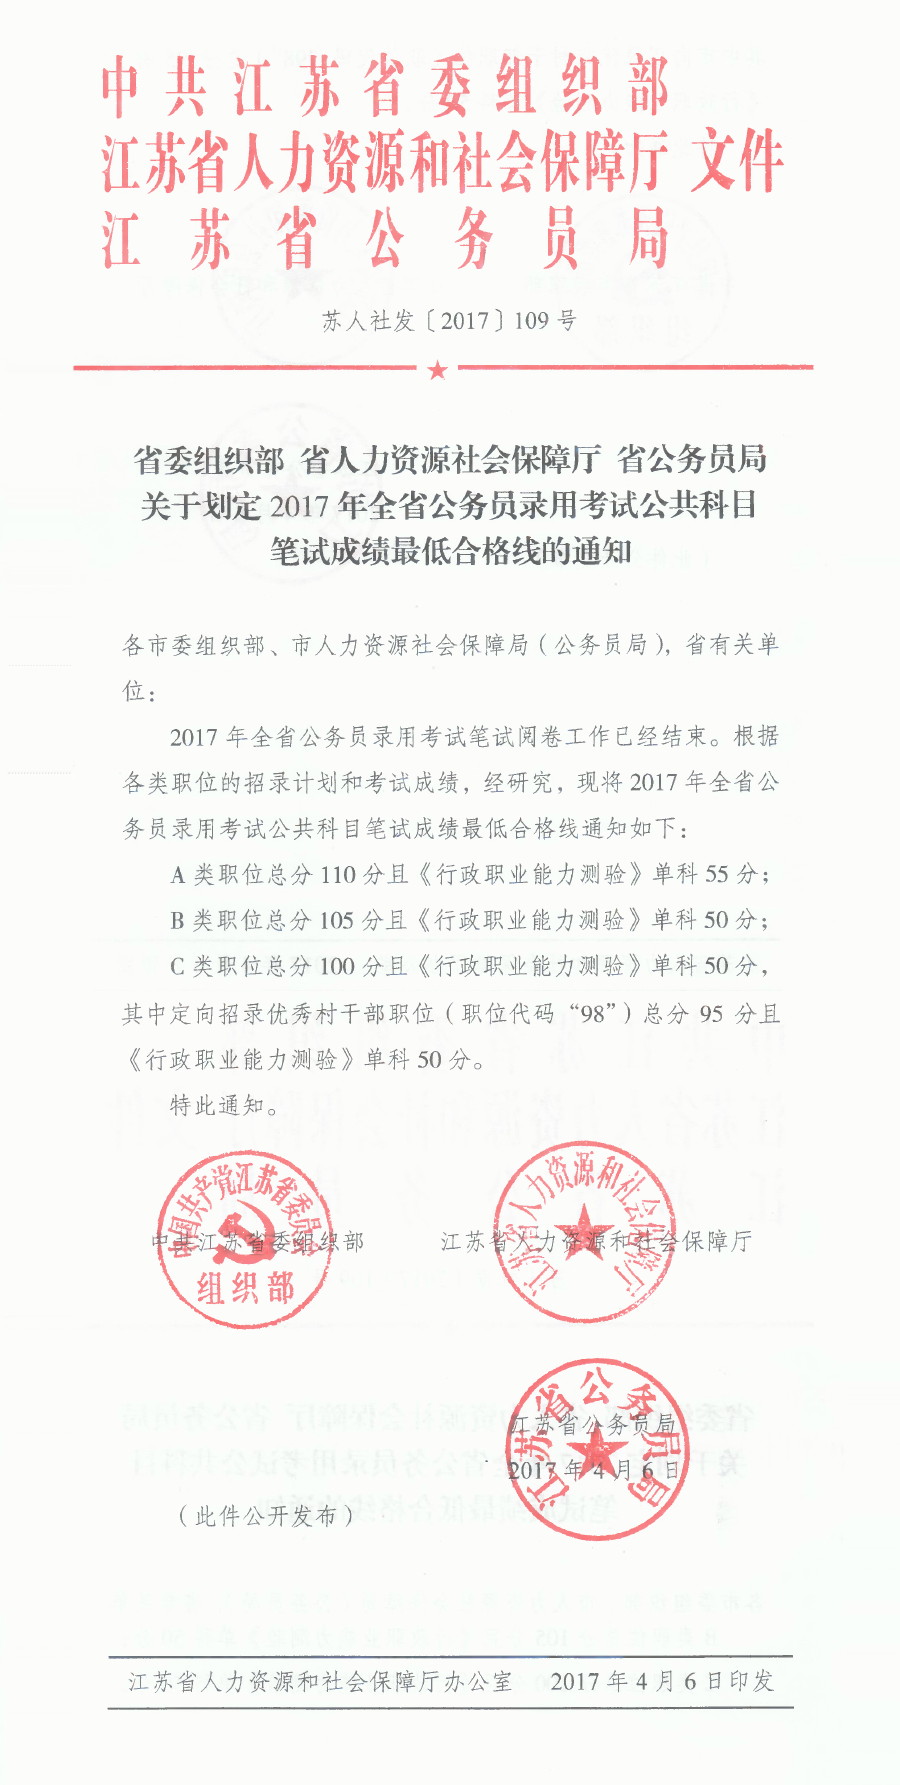 江苏省2017年公务员录用考试笔试成绩合格线的通知